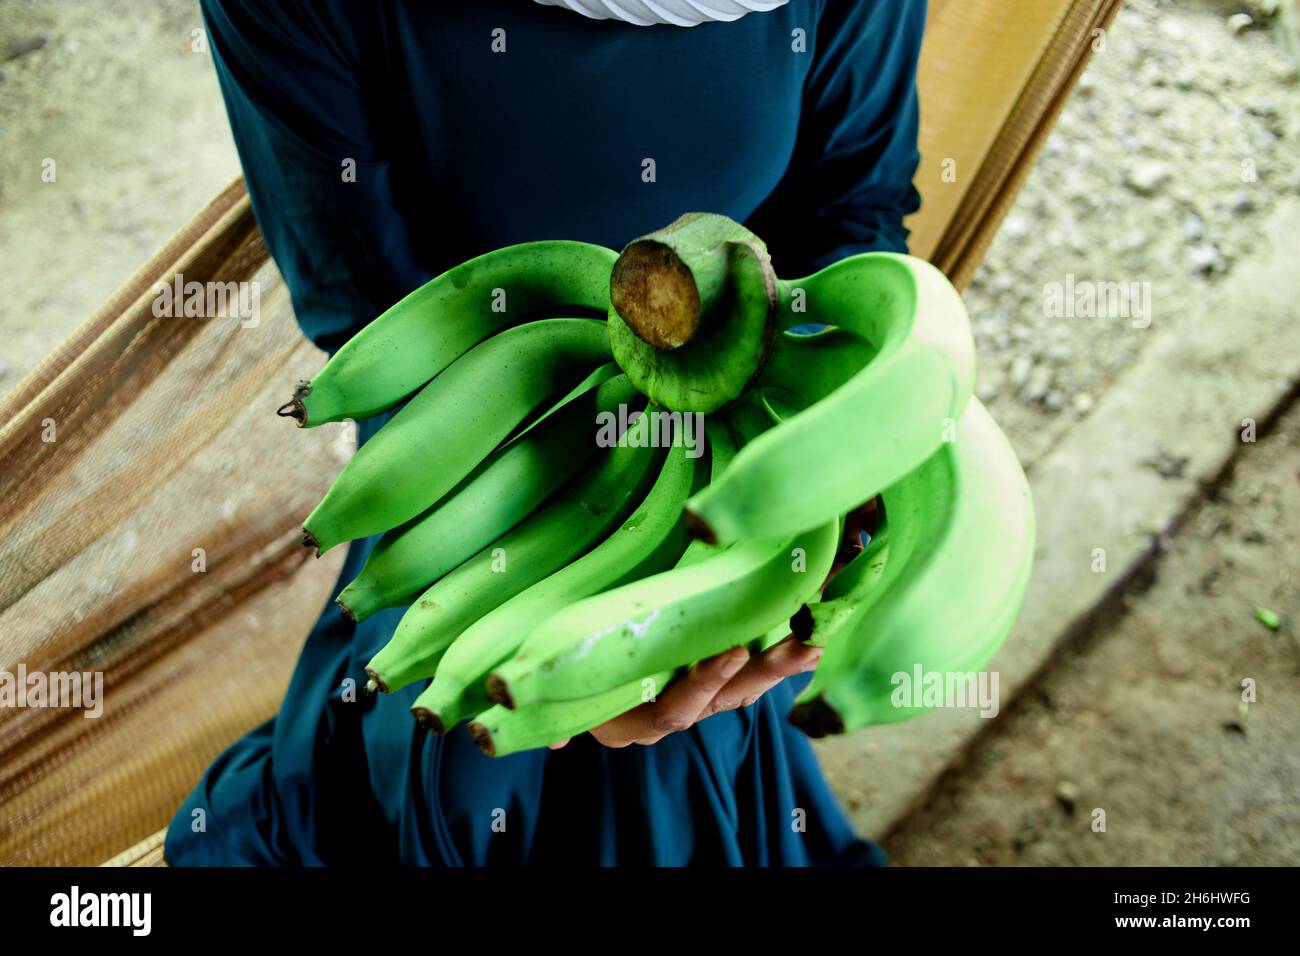 Femme musulmane assise sur un berceau en filet et tenant une bande de banane verte Banque D'Images